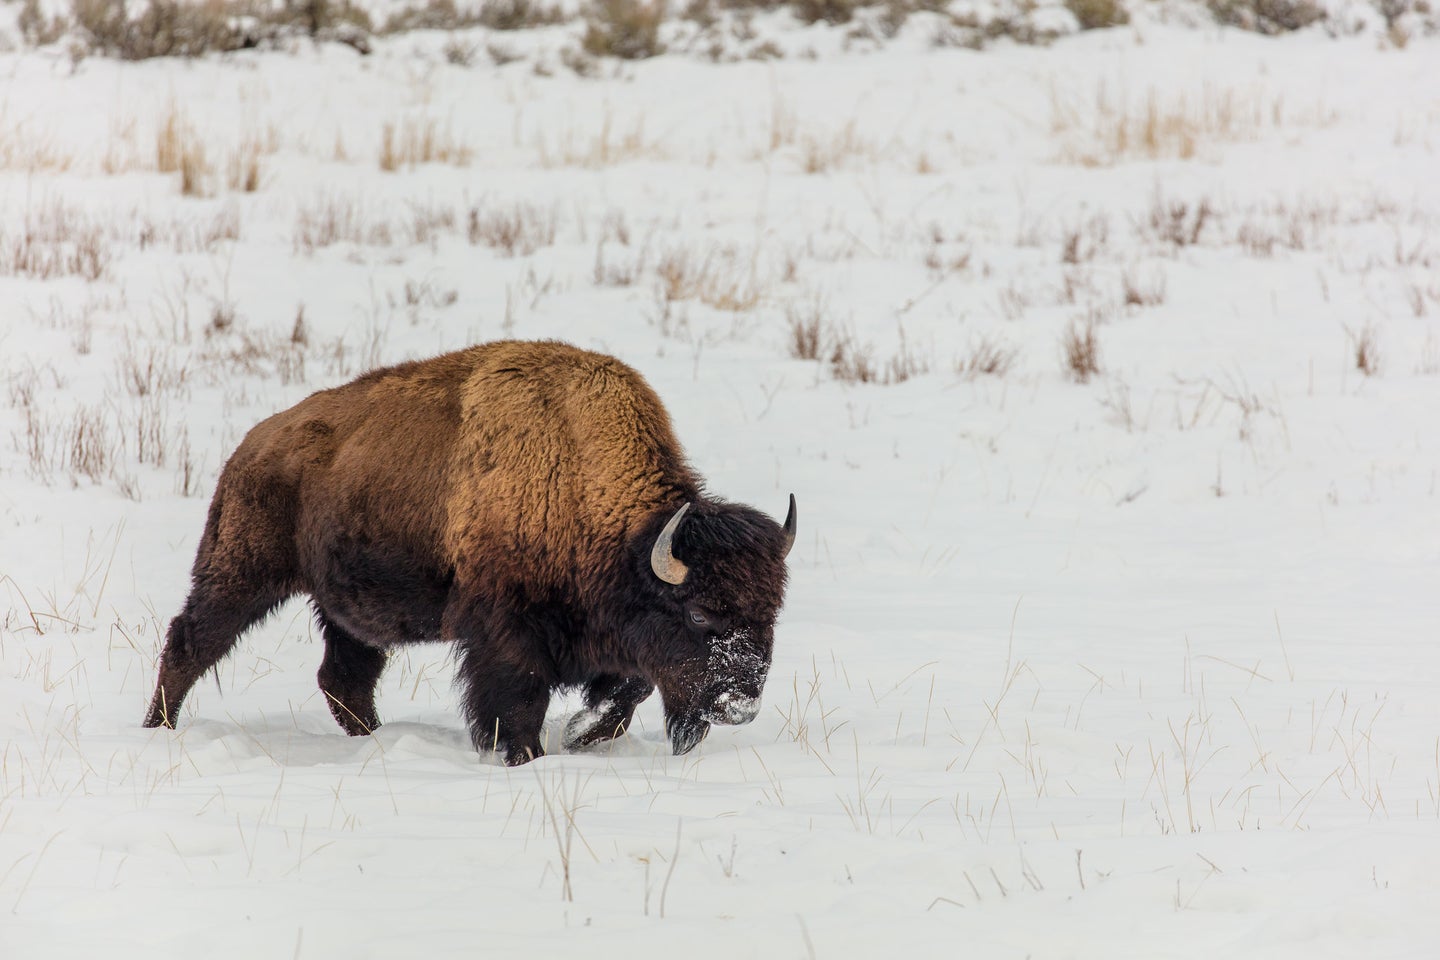 黄石国家公园的野牛在雪地里行走